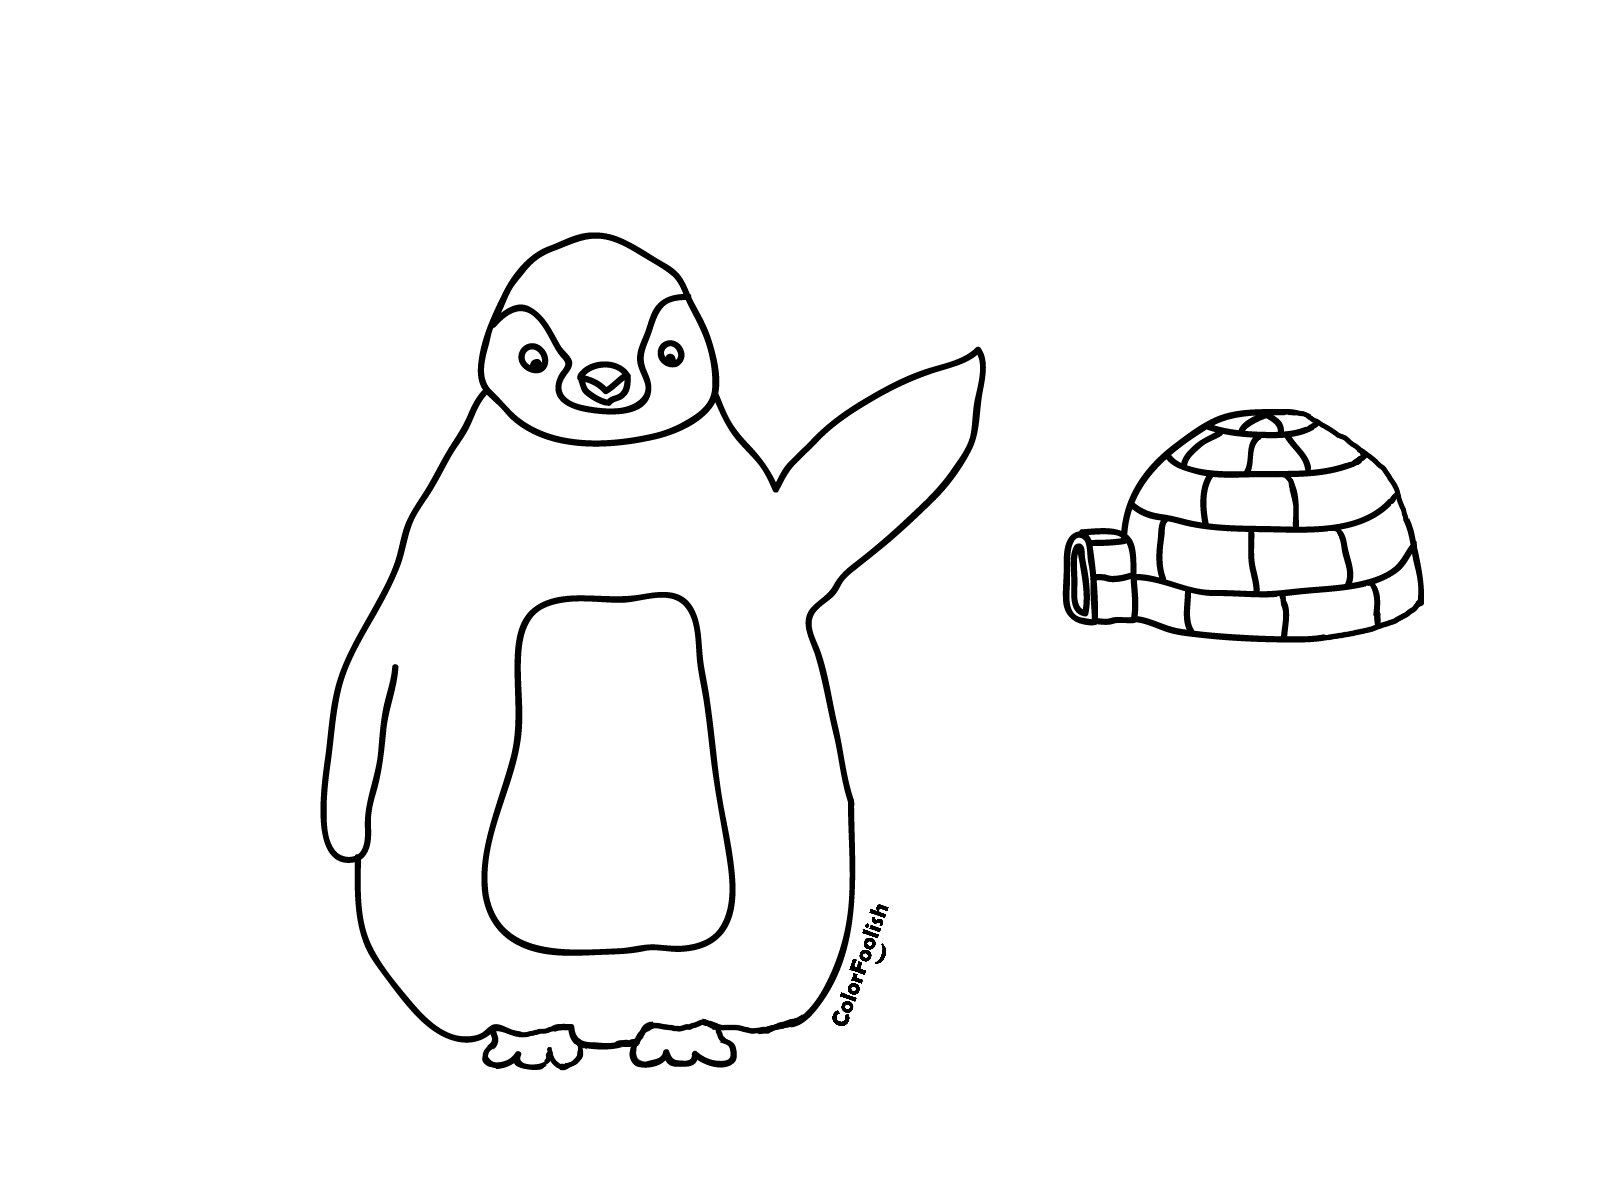 Dibujo para colorear de un pingüino y un iglú